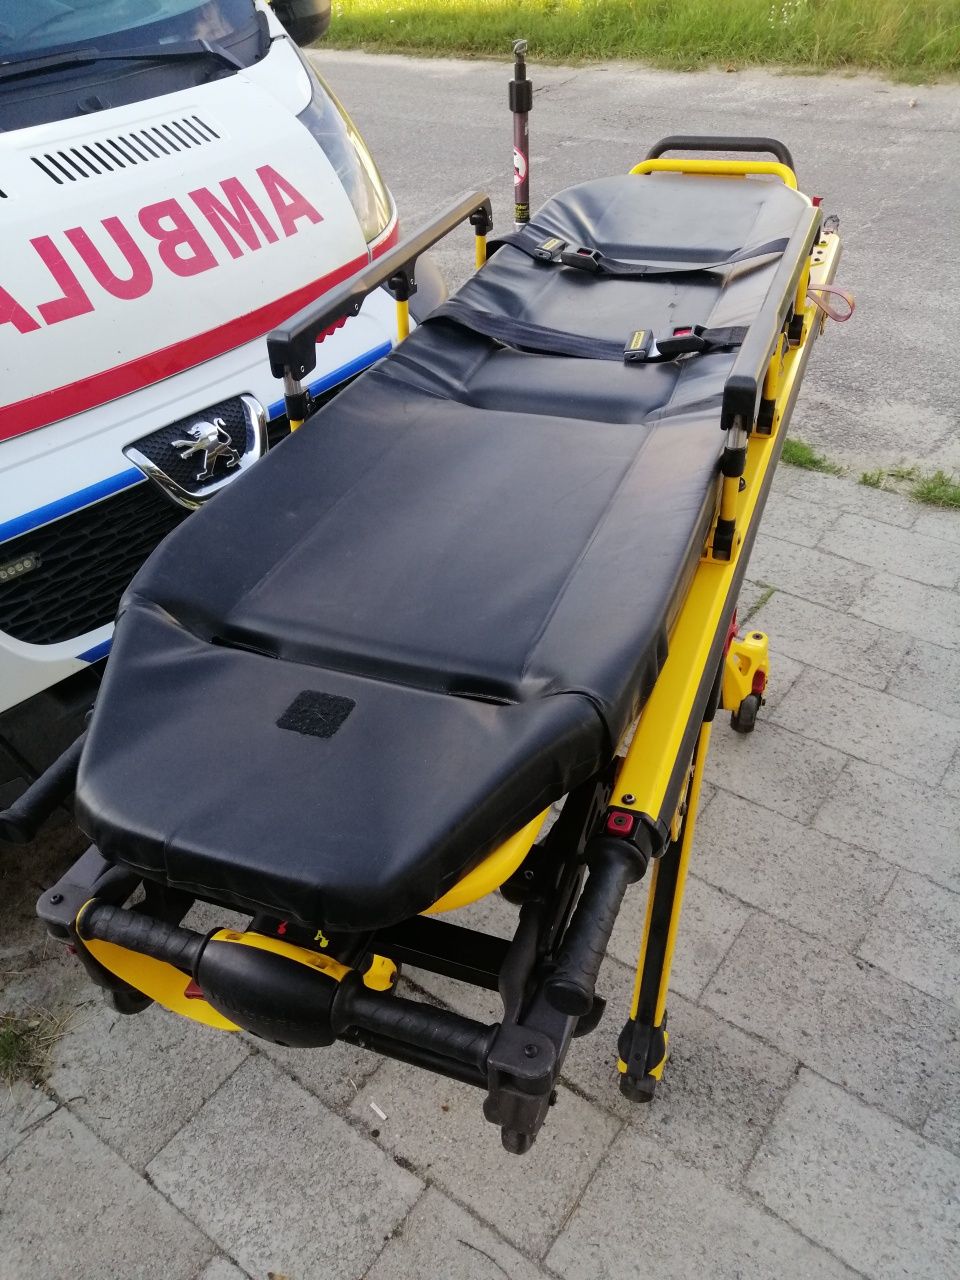 Nosze stryker ambulans laweta elektryczna krzeselko mercedes vw lt